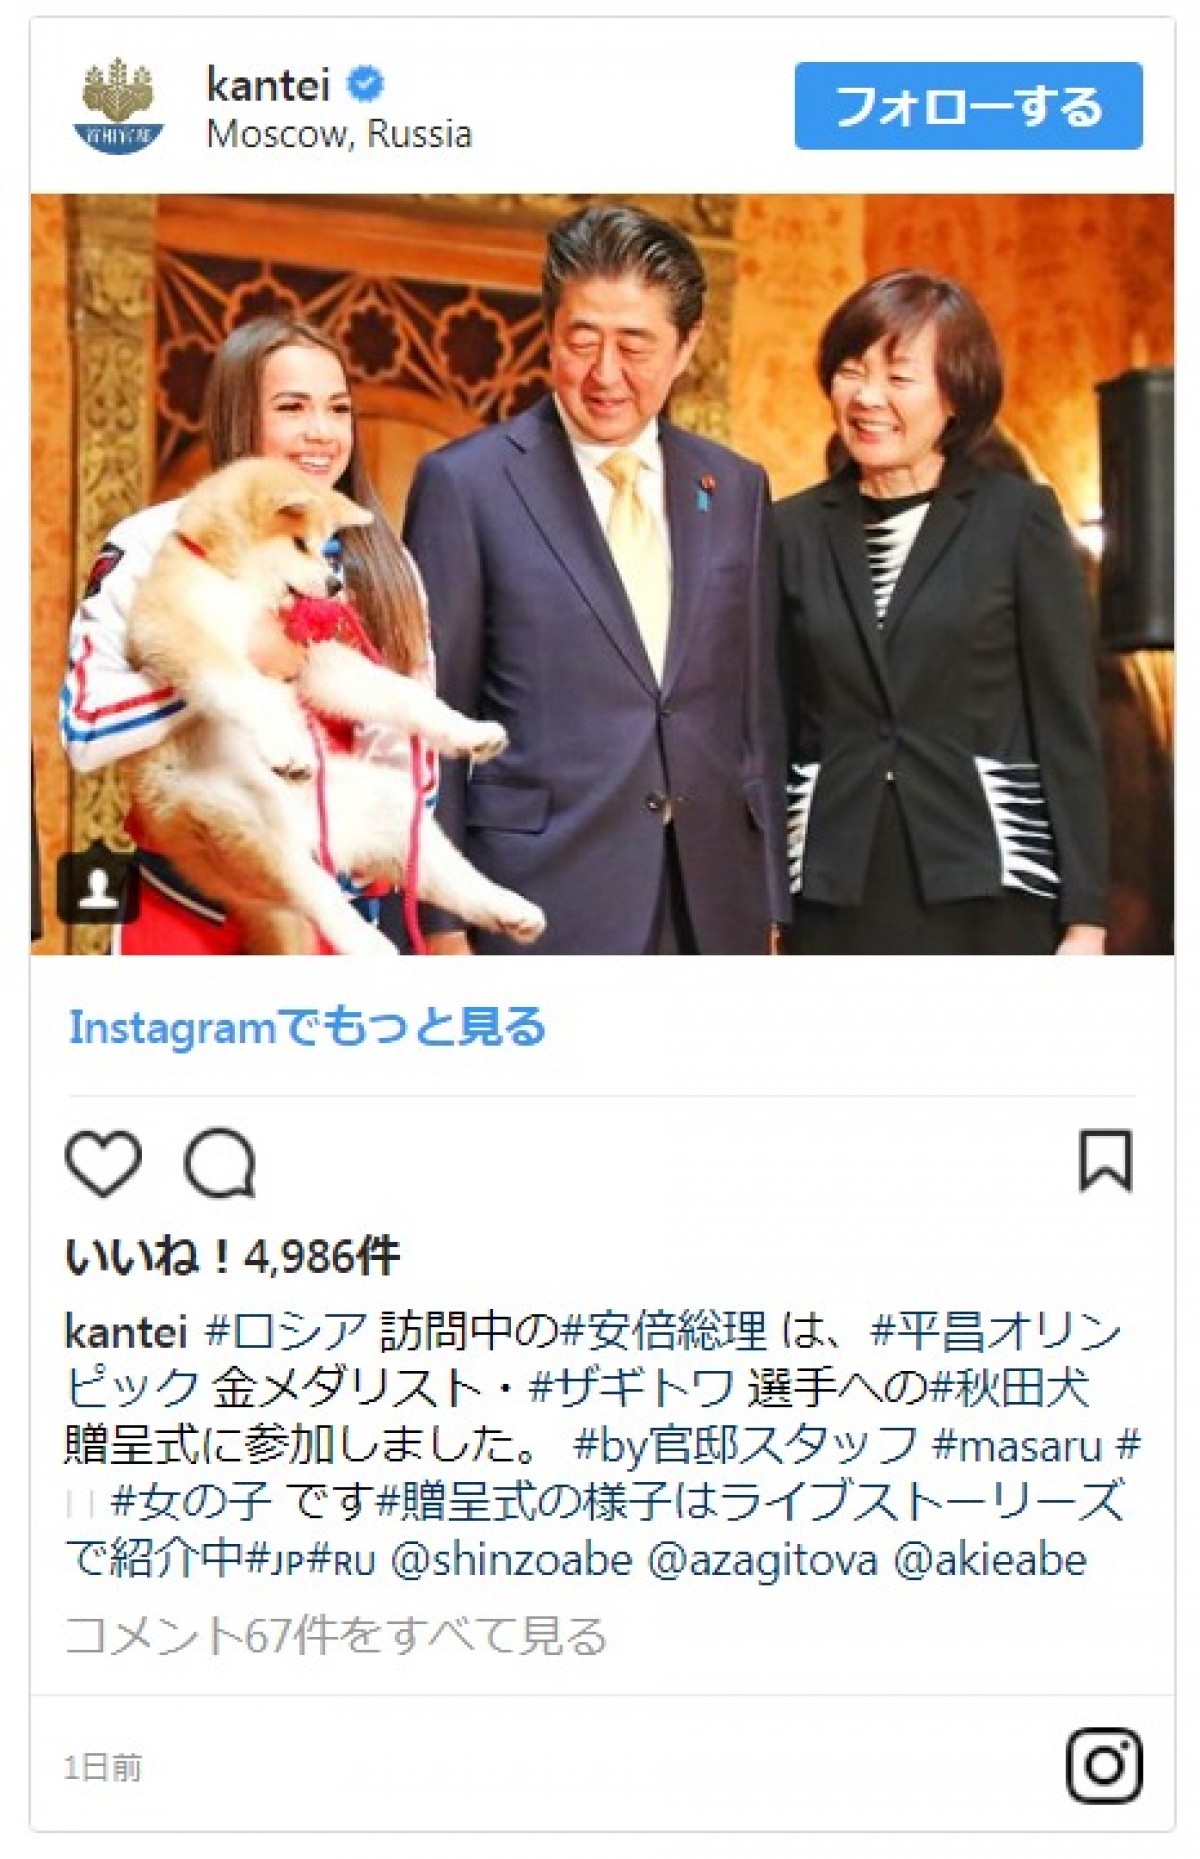 ザギトワが秋田犬マサルと念願の対面　安倍首相と昭恵夫人も立ち会う